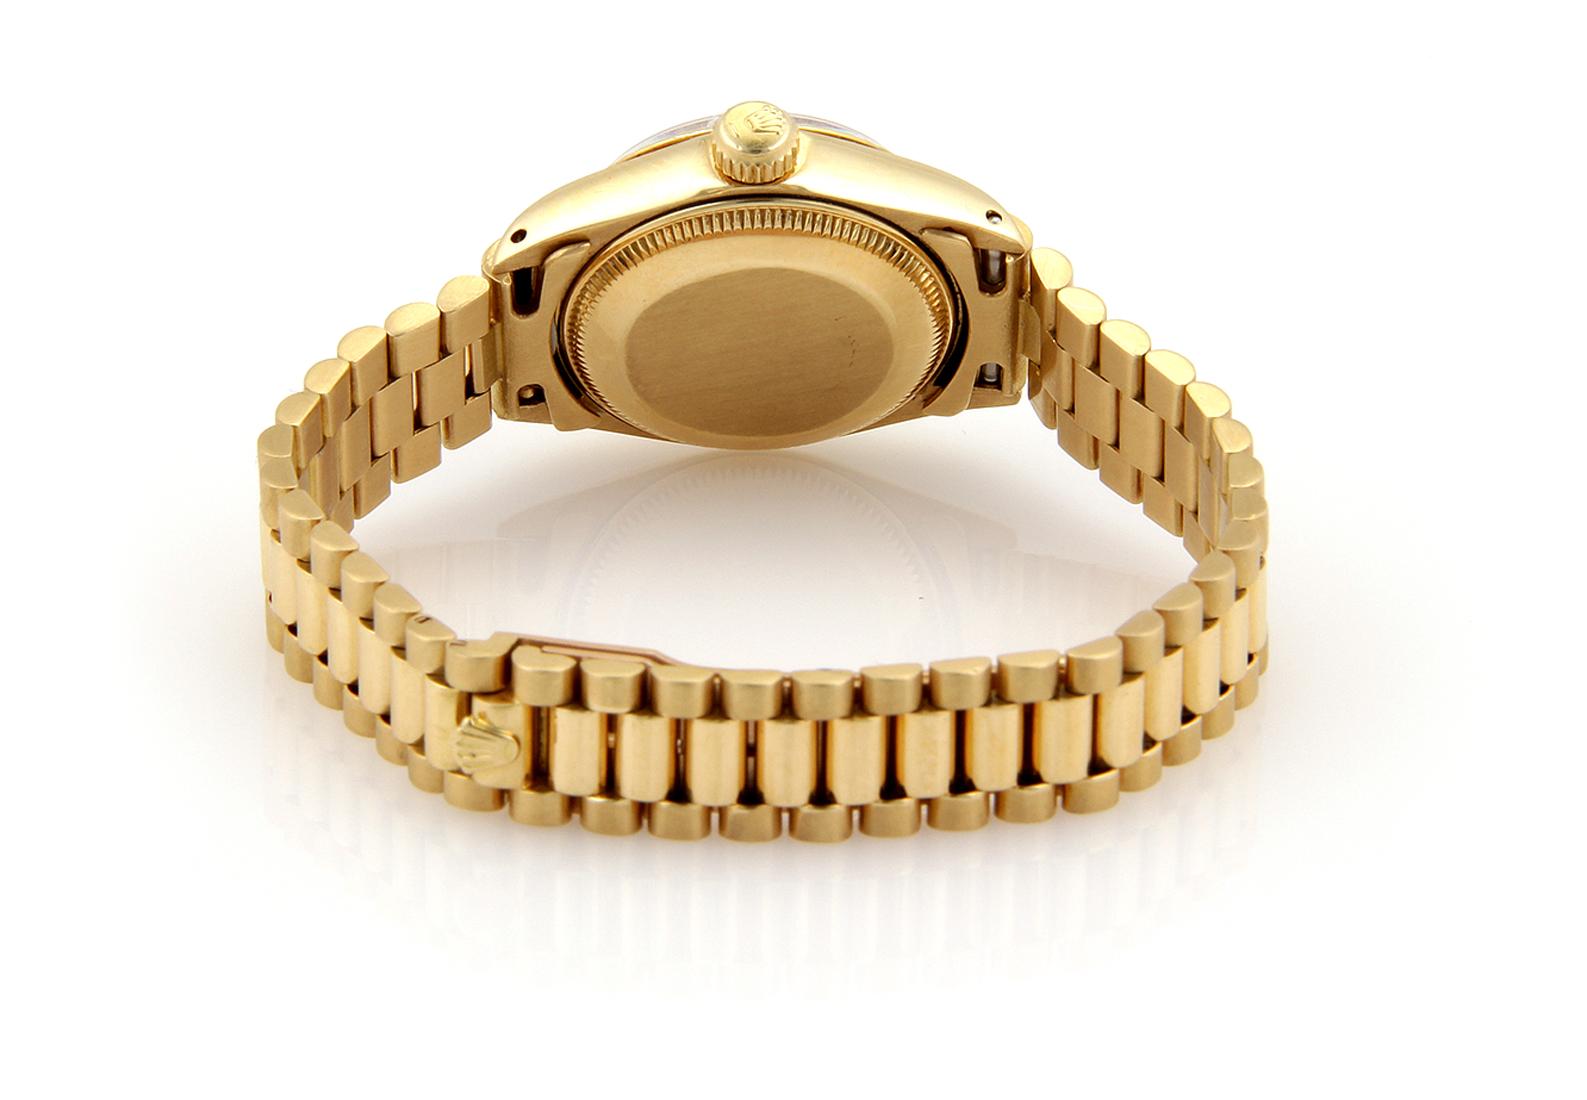 Diese schöne authentische Damen Armbanduhr ist von Rolex, gut aus 18k Gelbgold mit hochglanzpolierten Finish gefertigt, es verfügt über ein rundes Gesicht und Fall mit dem Jubiläumsband an den Fall befestigt. Schwarzes Zifferblatt und goldfarbene